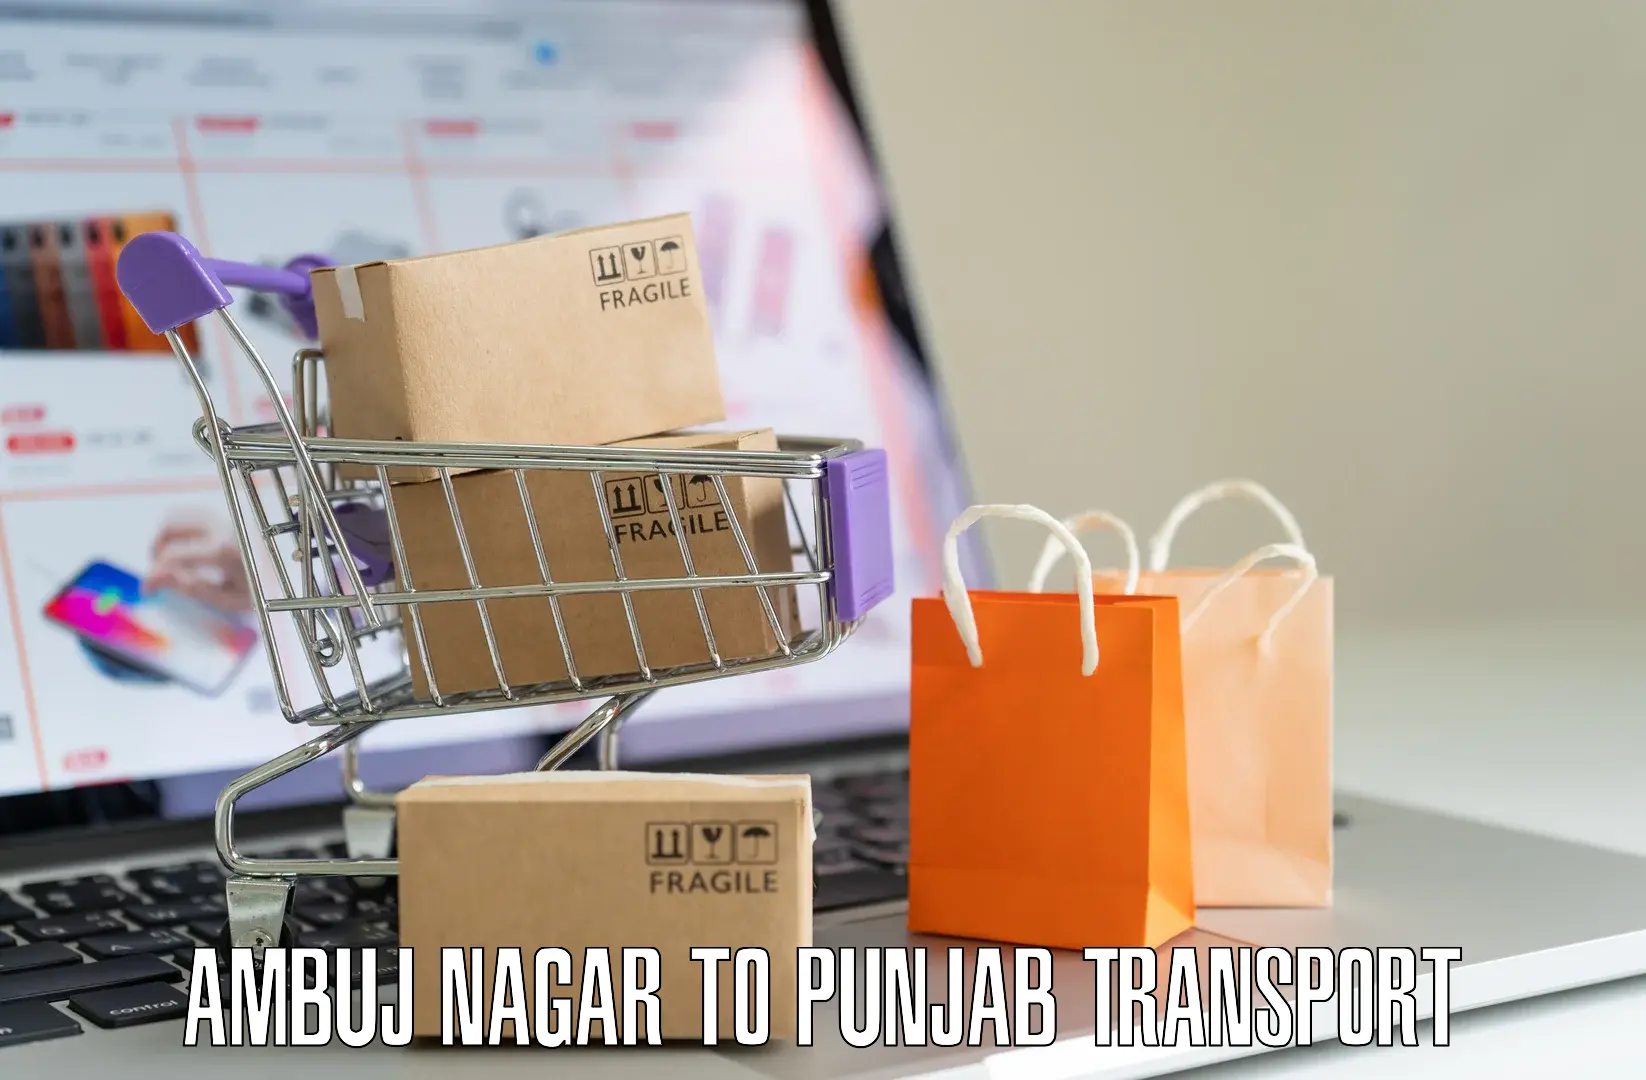 Furniture transport service in Ambuj Nagar to Punjab